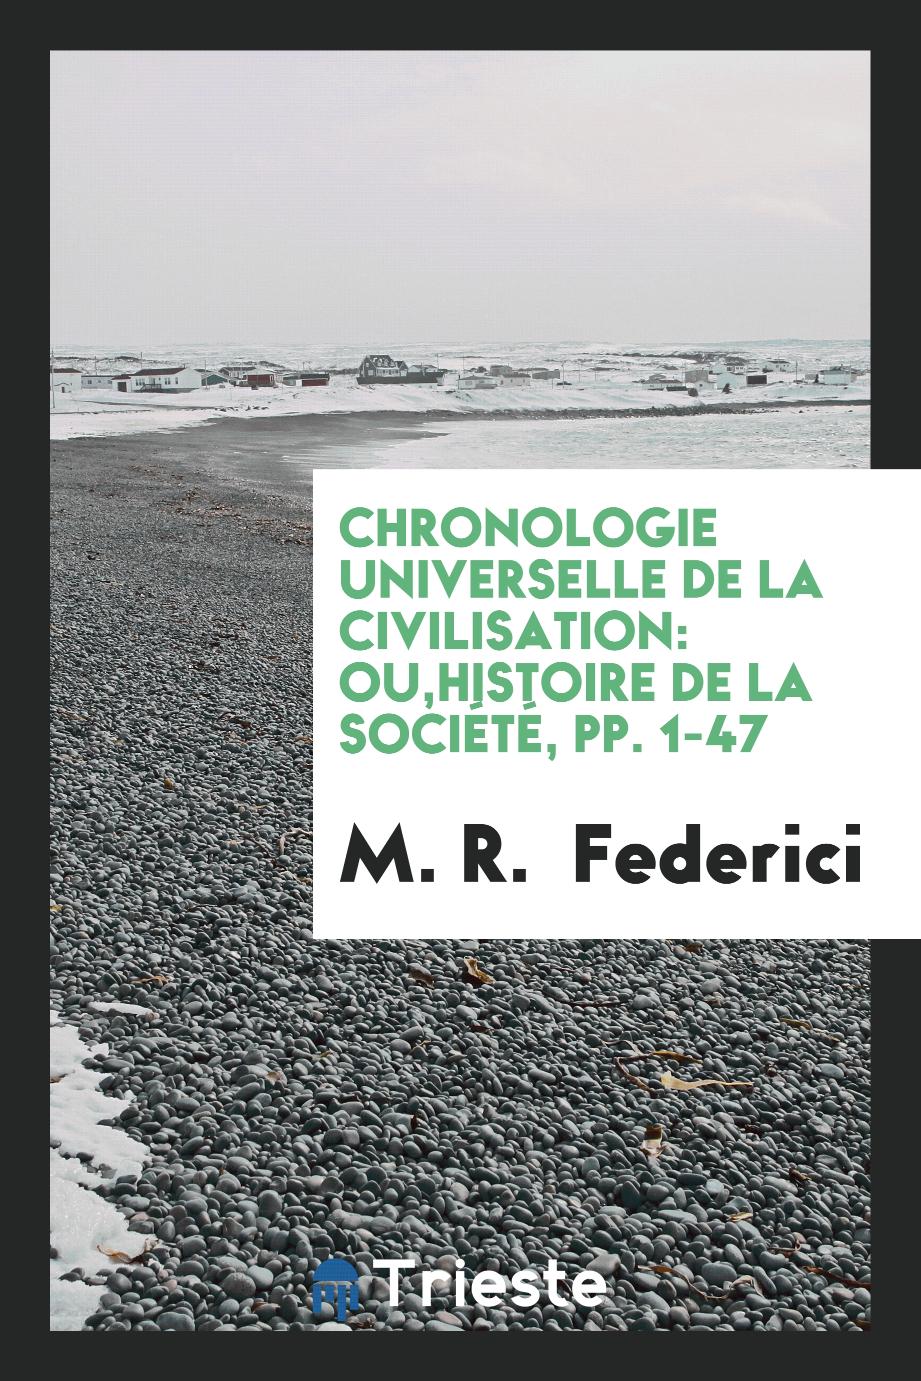 M. R.  Federici - Chronologie Universelle de la Civilisation: Ou,Histoire de la Société, pp. 1-47